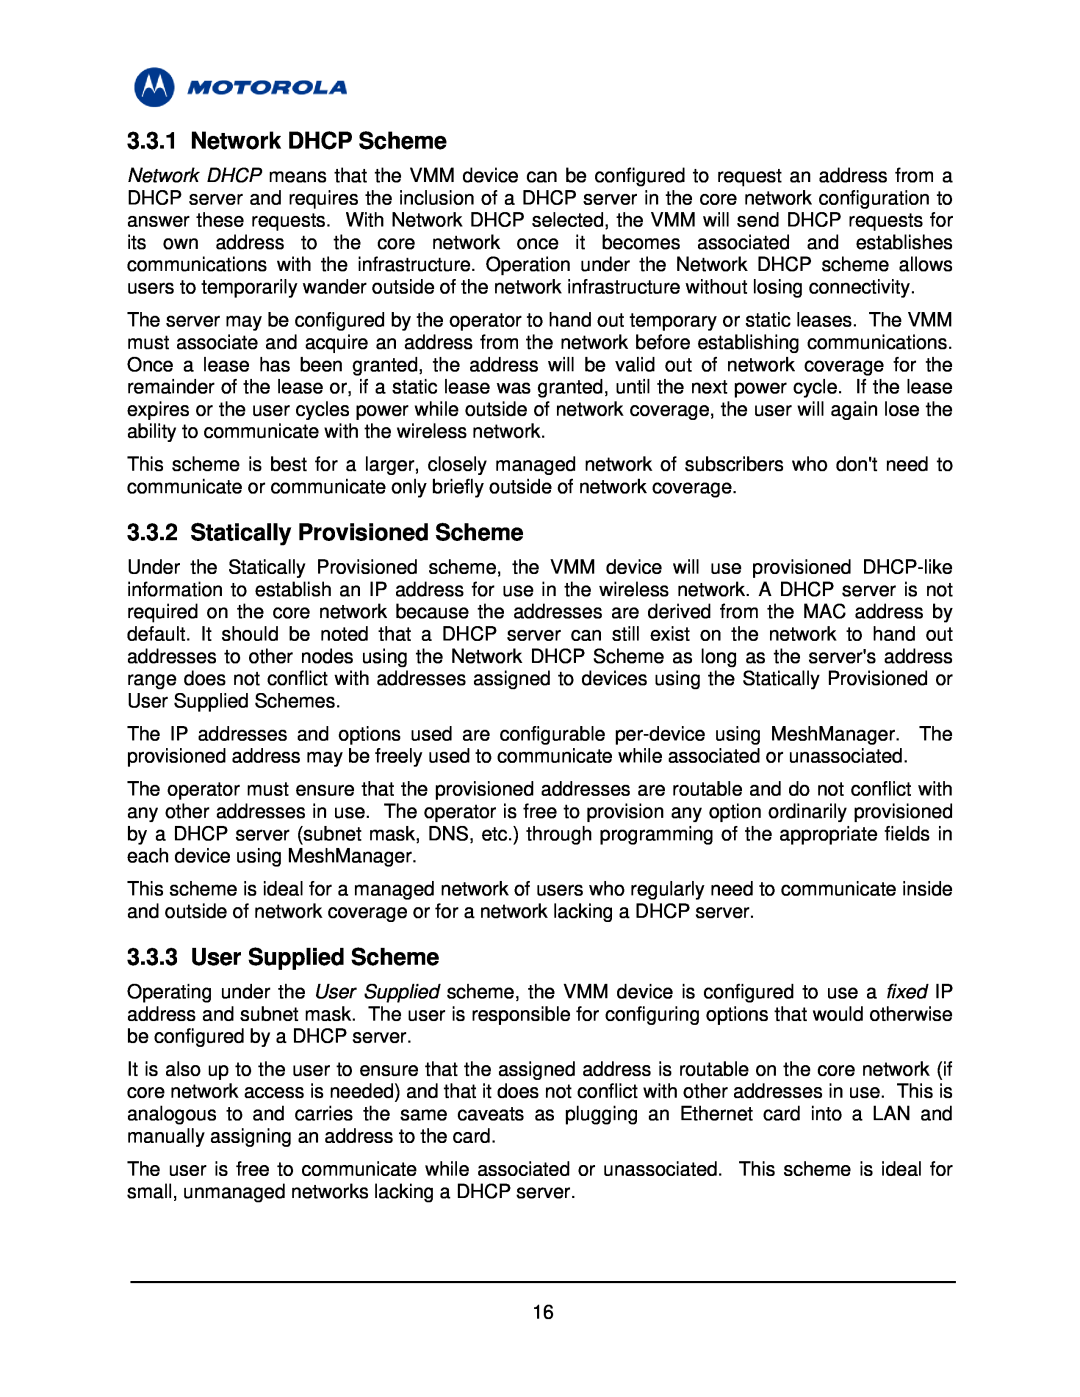 Motorola 3.1 manual Network DHCP Scheme, Statically Provisioned Scheme, User Supplied Scheme 